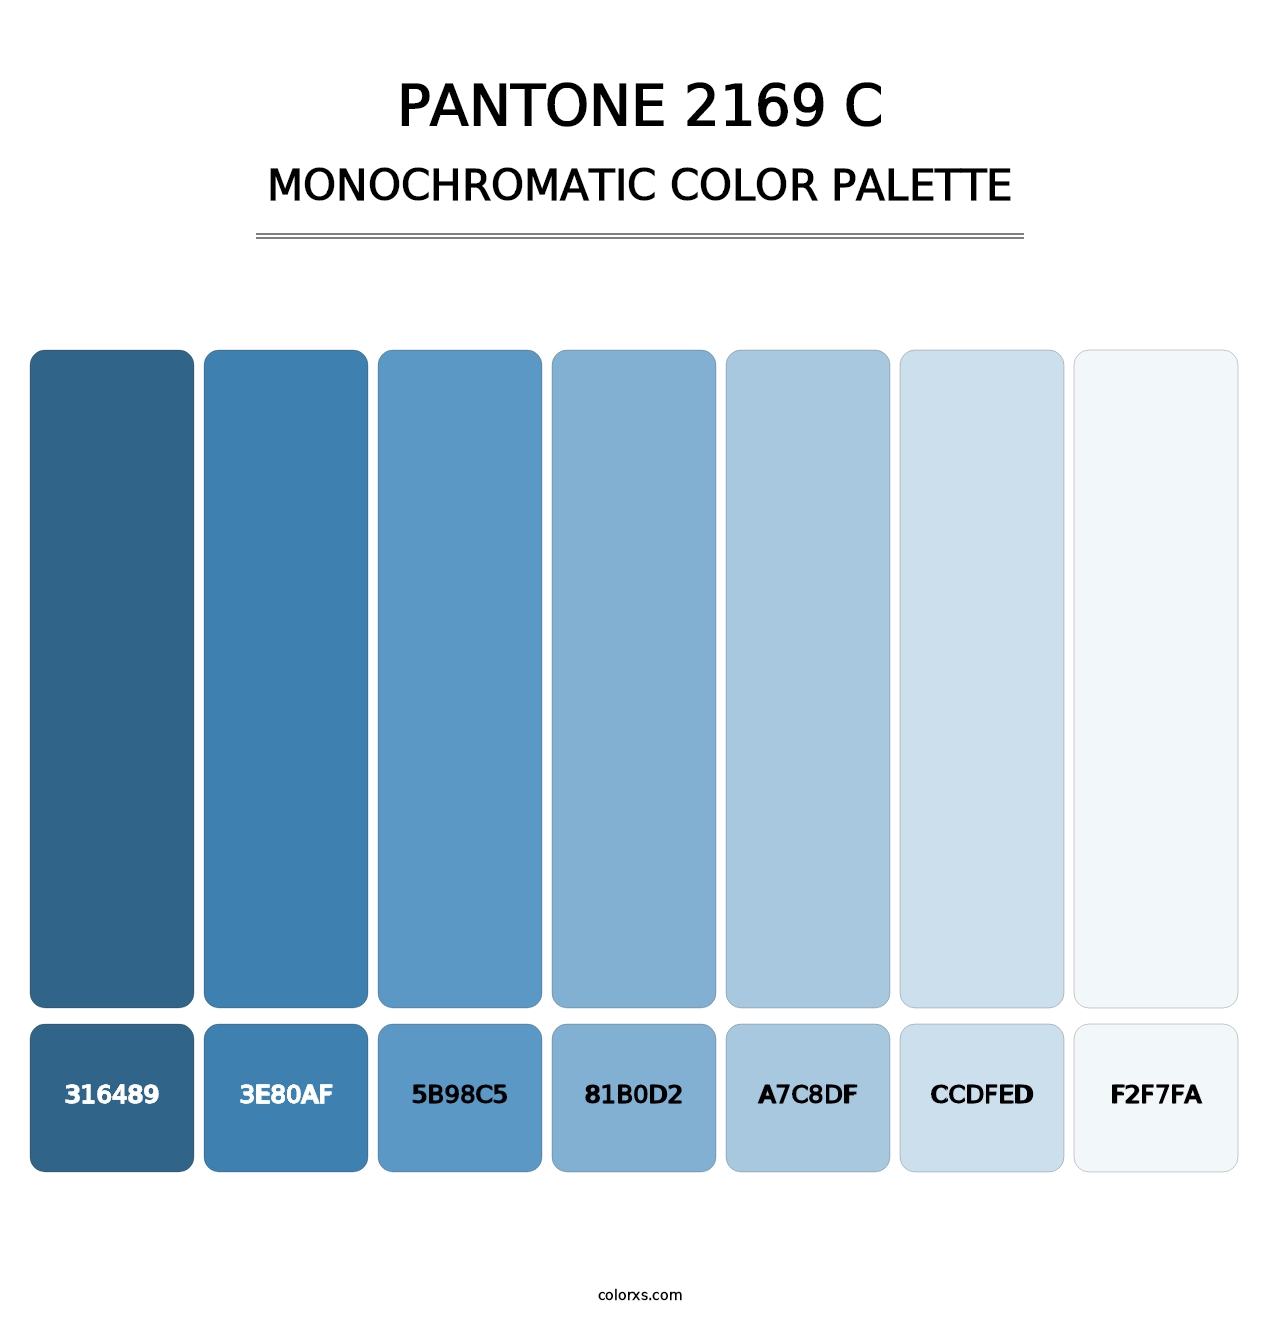 PANTONE 2169 C - Monochromatic Color Palette